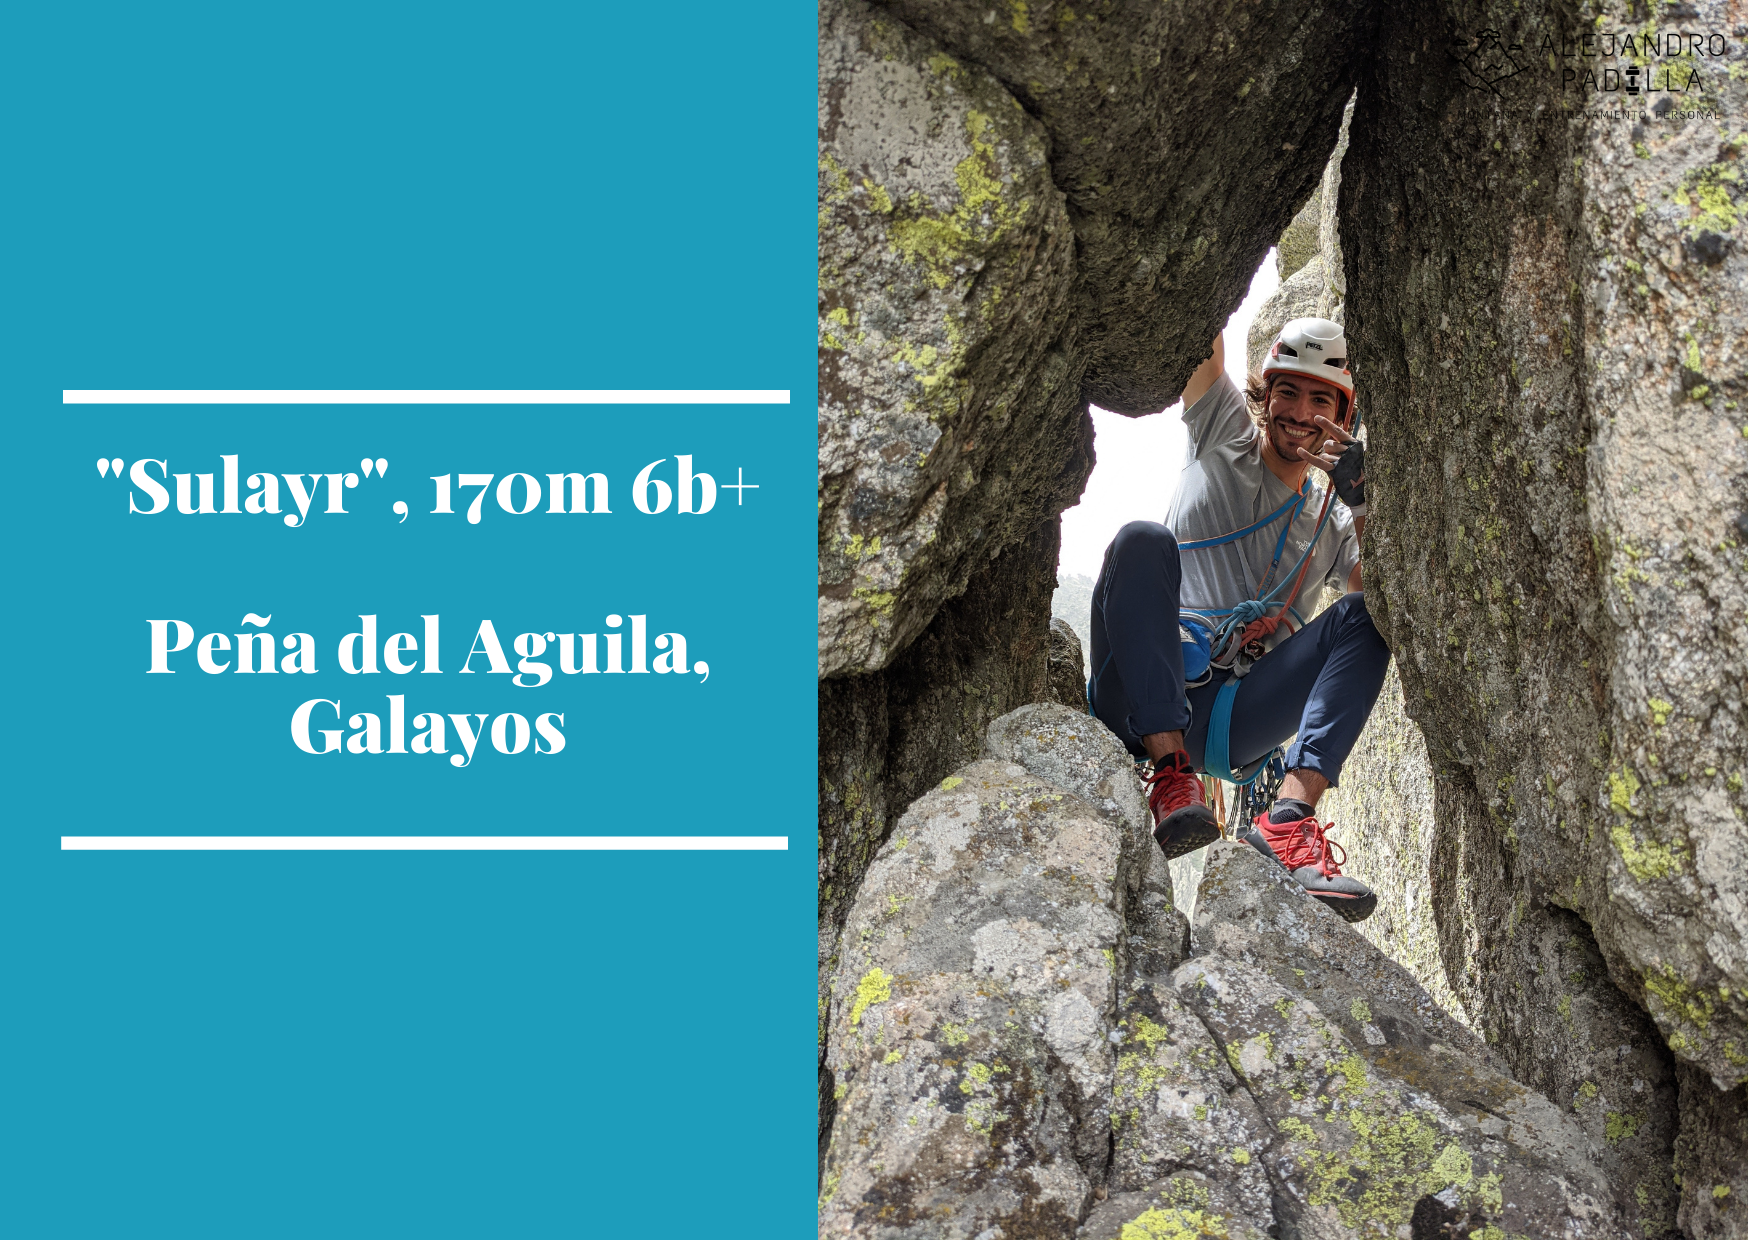 «Sulayr» 170m, 6b+ a la Peña del Aguila, Galayos.